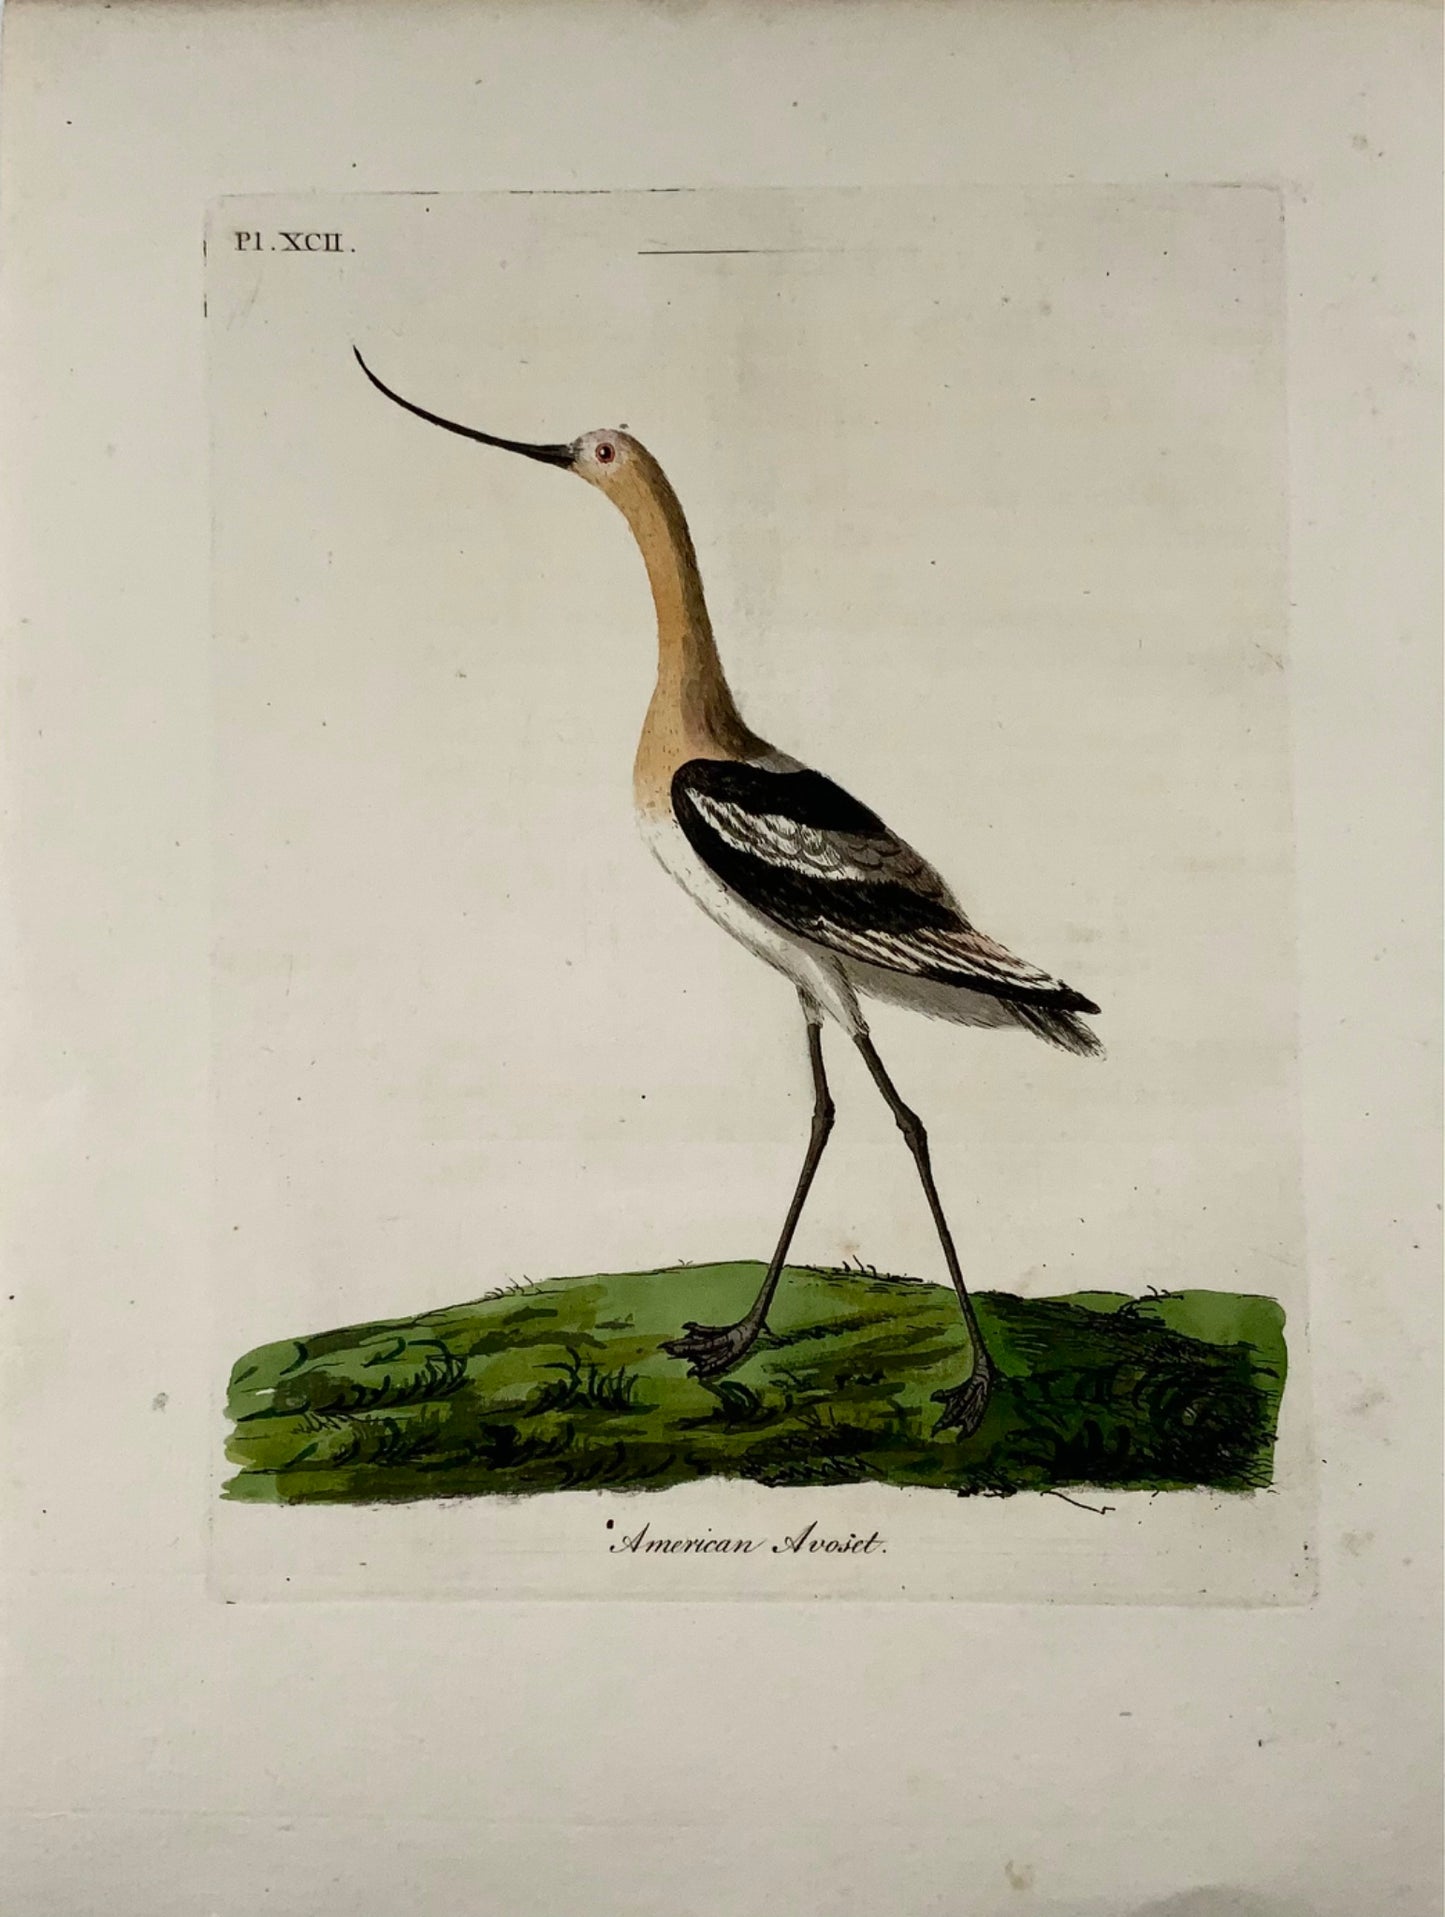 1785 Avocetta americana, John Latham, quarto, ornitologia, incisione colorata a mano